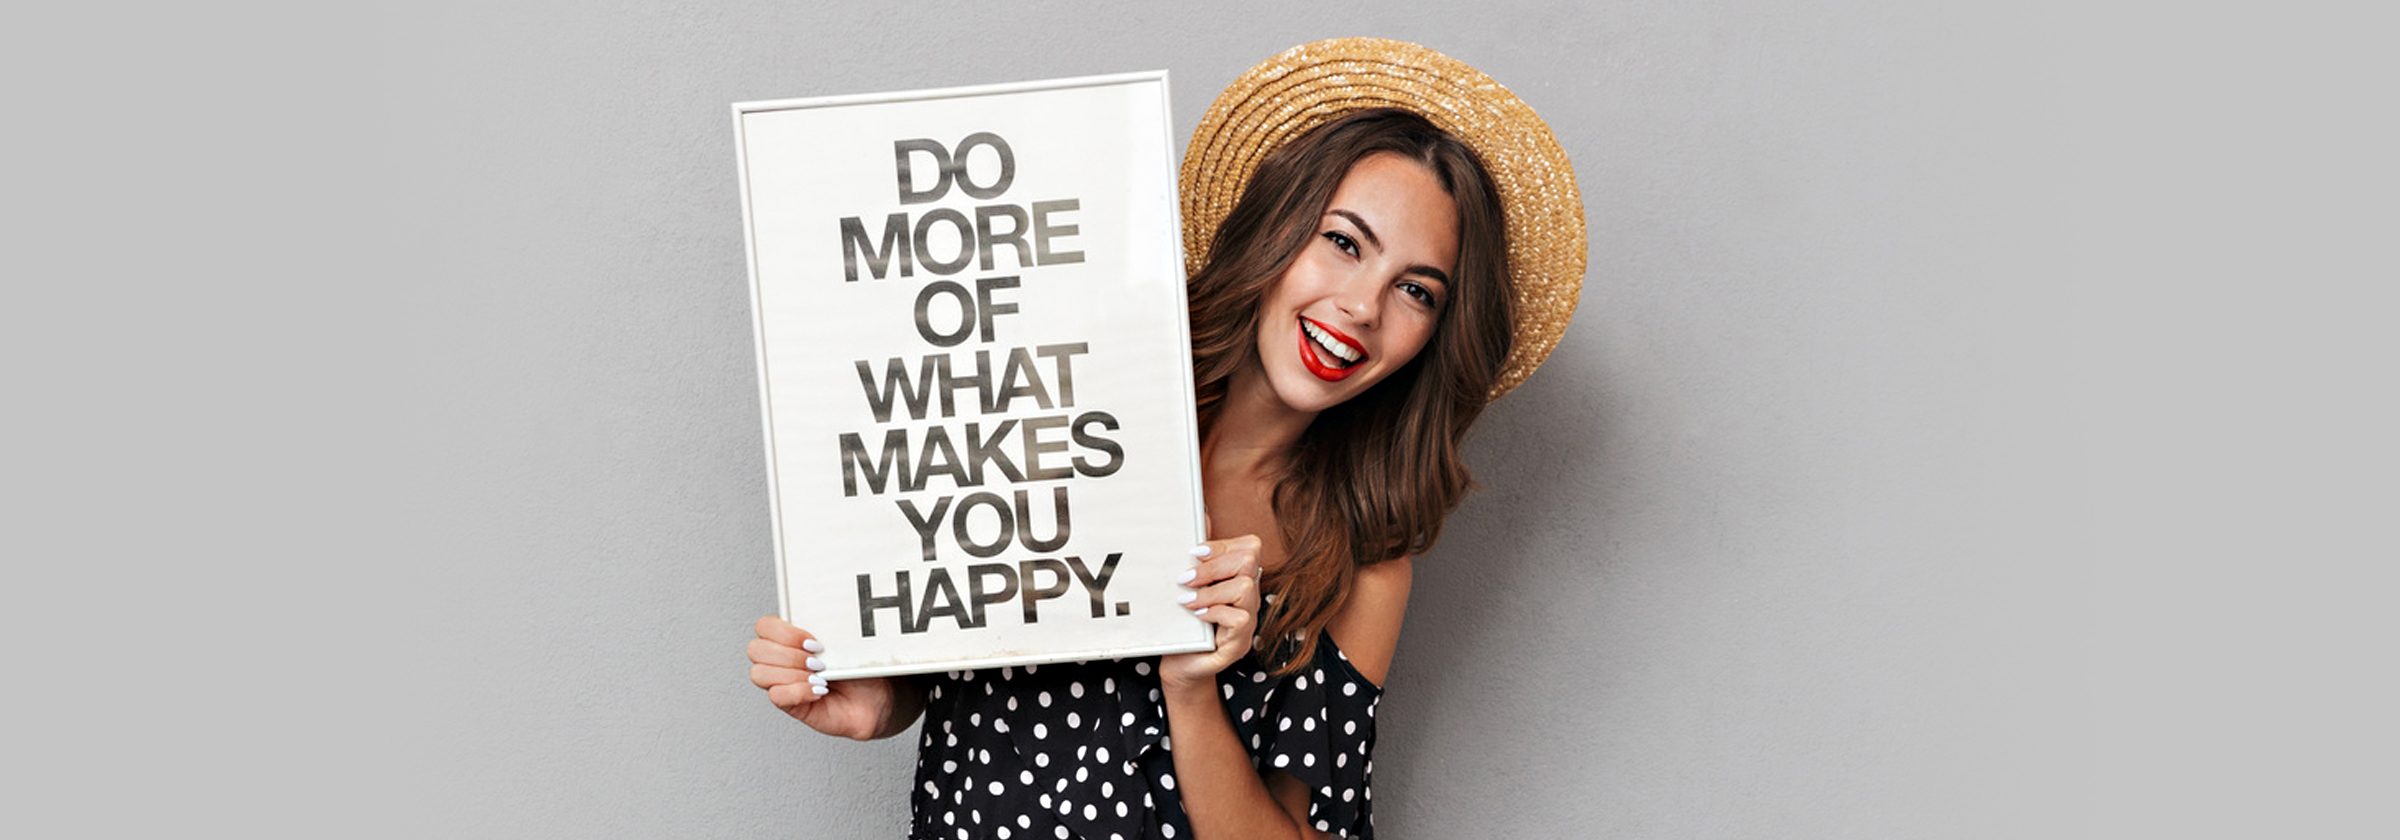 Junge Frau hält ein Schild hoch mit der Aufschrift " Do more of what makes you happy."